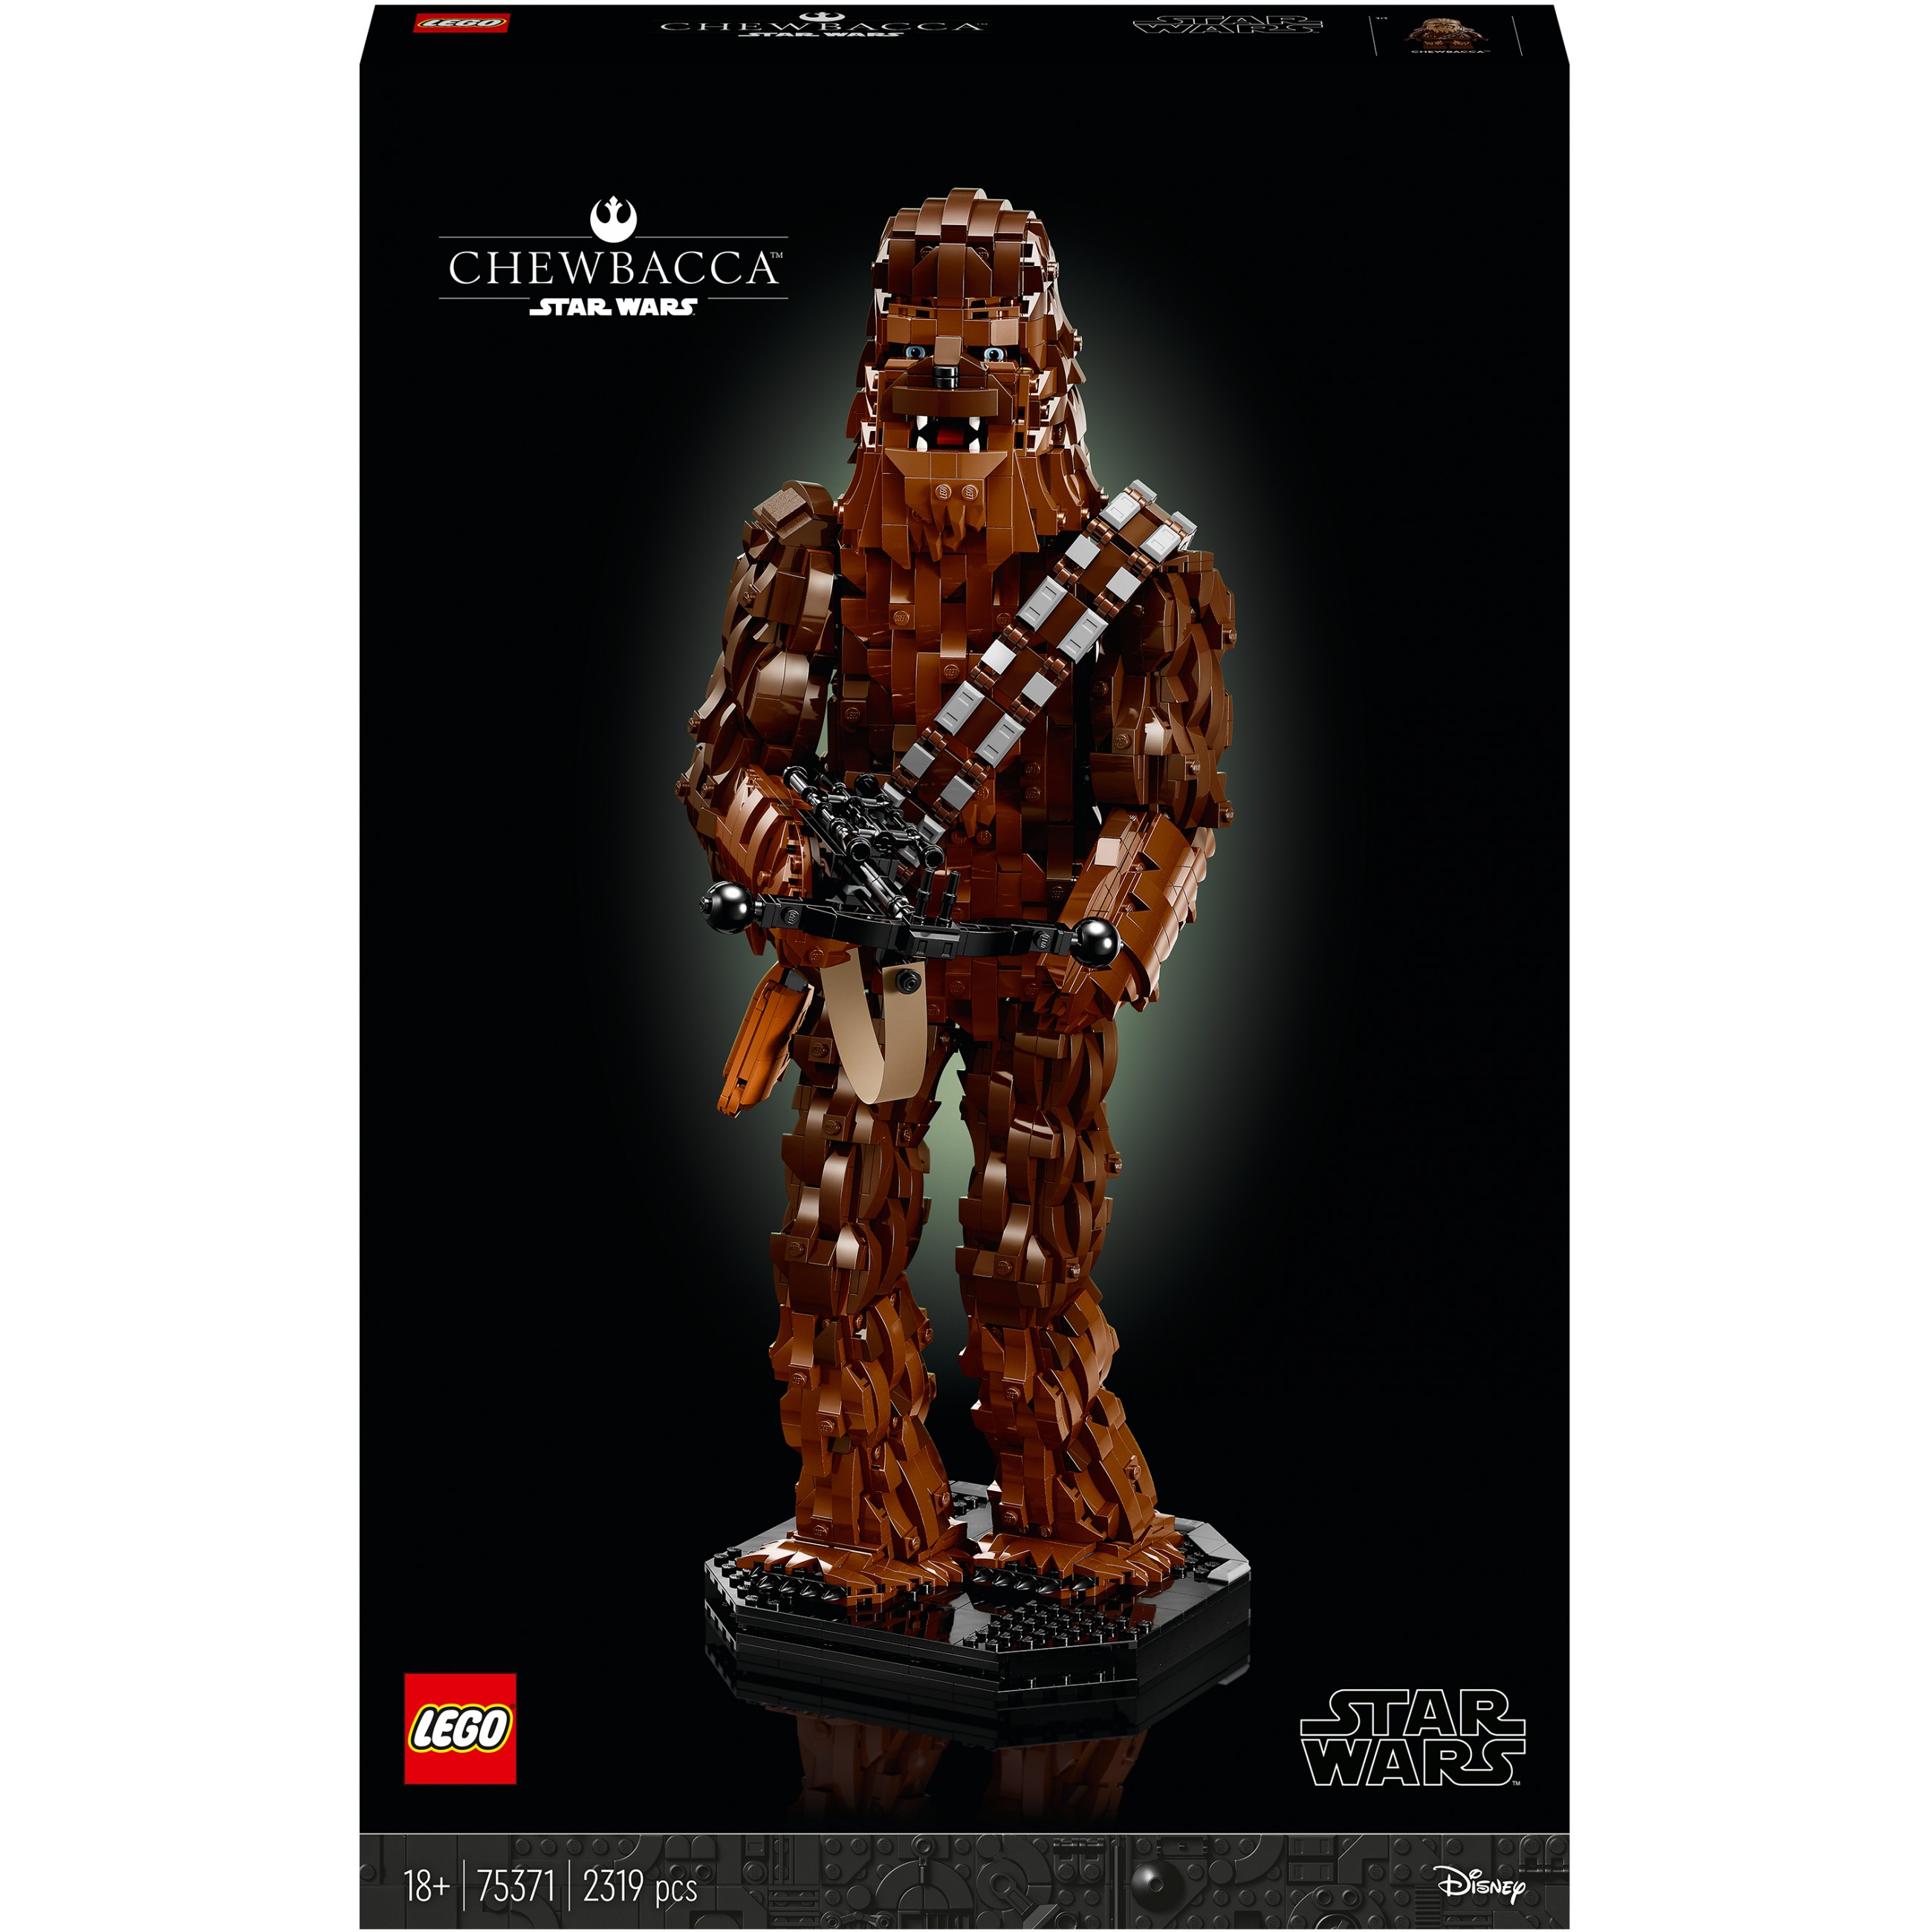 SOP LEGO Star Wars Chewbacca 75371